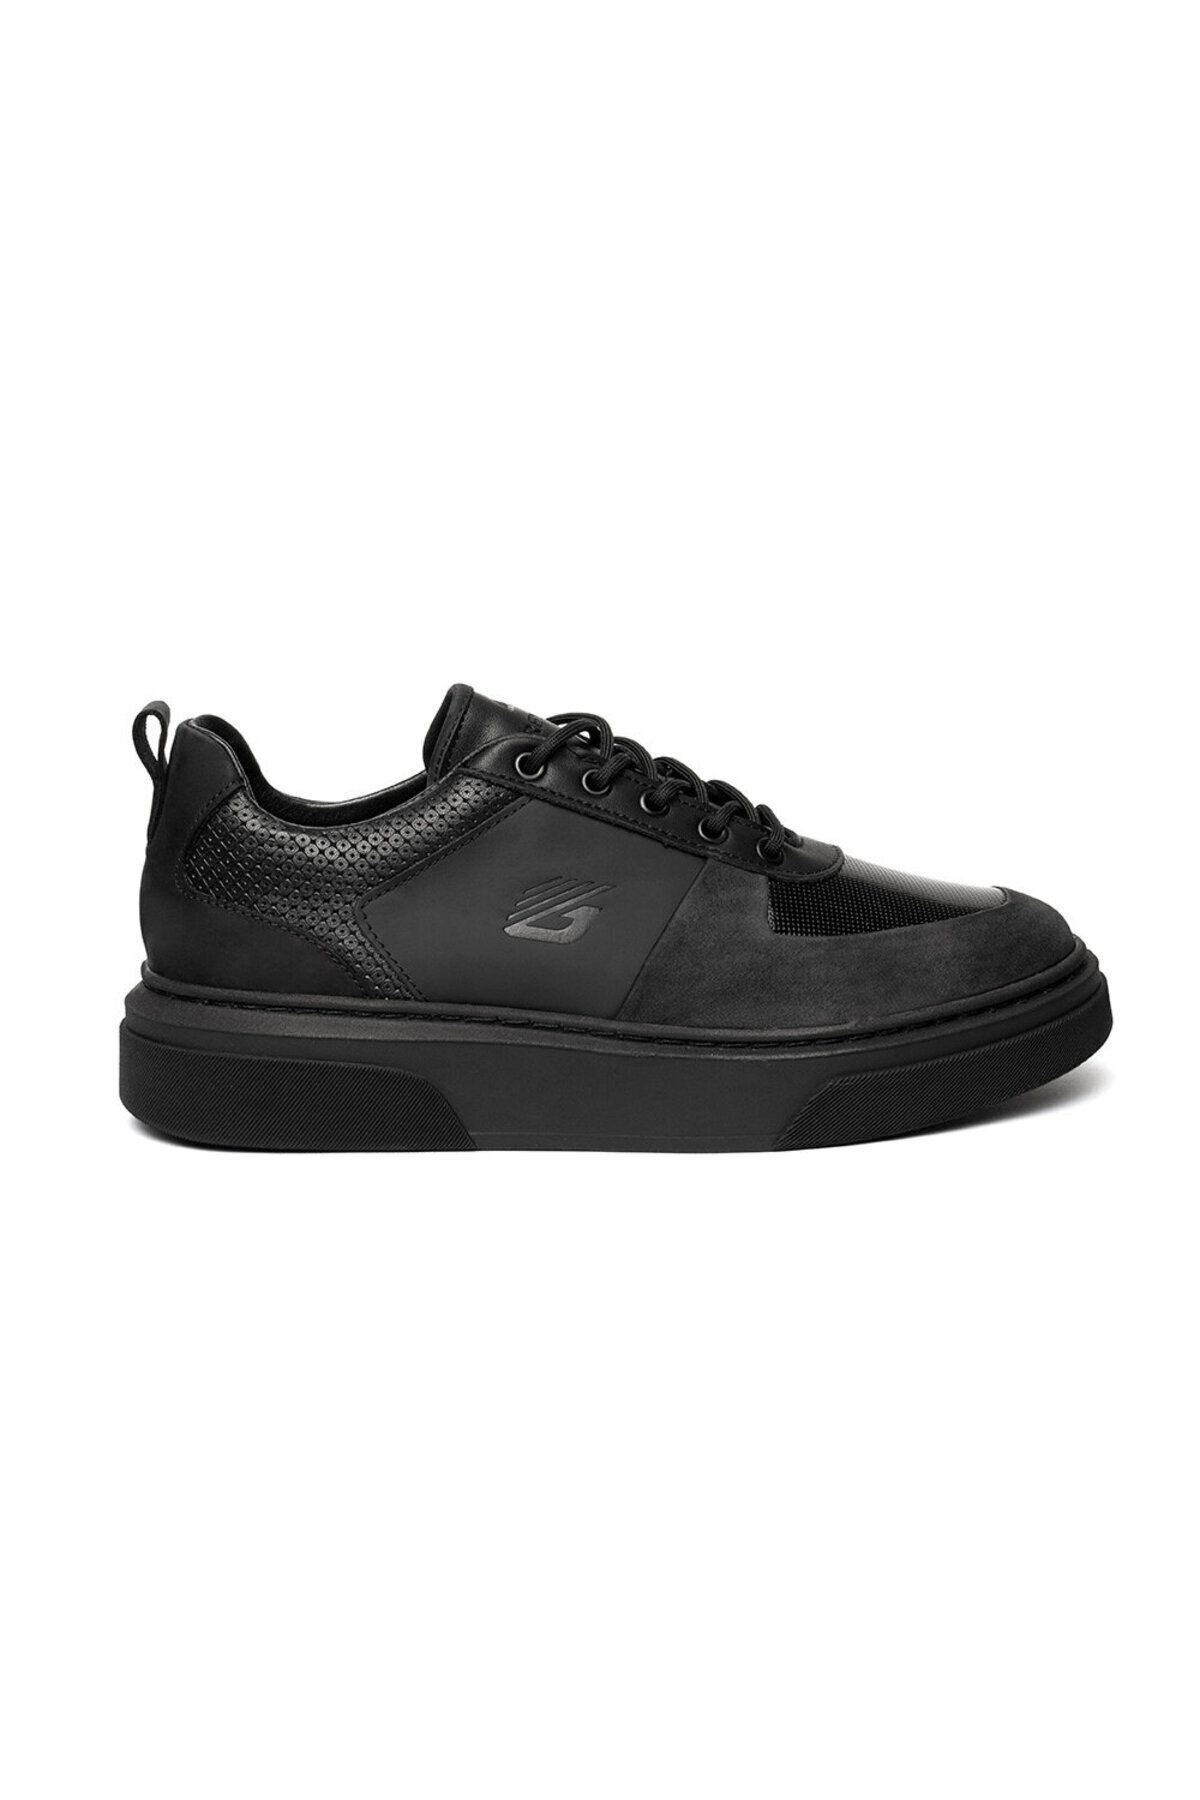 Greyder Erkek Siyah Hakiki Deri Sneaker Ayakkabı 3k1sa16410 Fiyatı ...